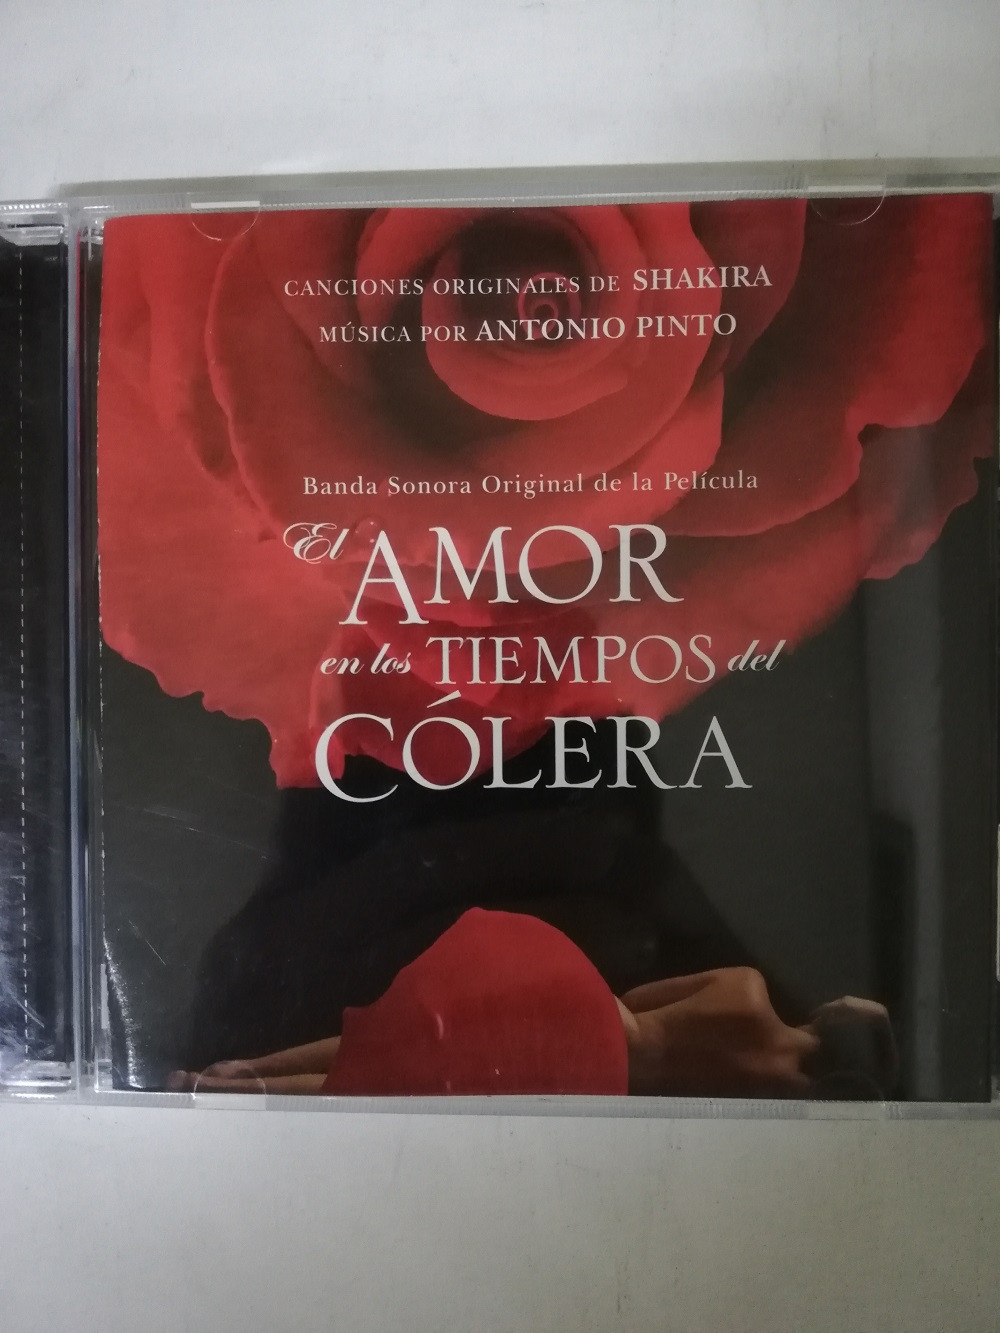 Imagen CD EL AMOR EN LOS TIEMPOS DEL COLERA - BANDA SONORA ORIGINAL DE LA PELICULA 1